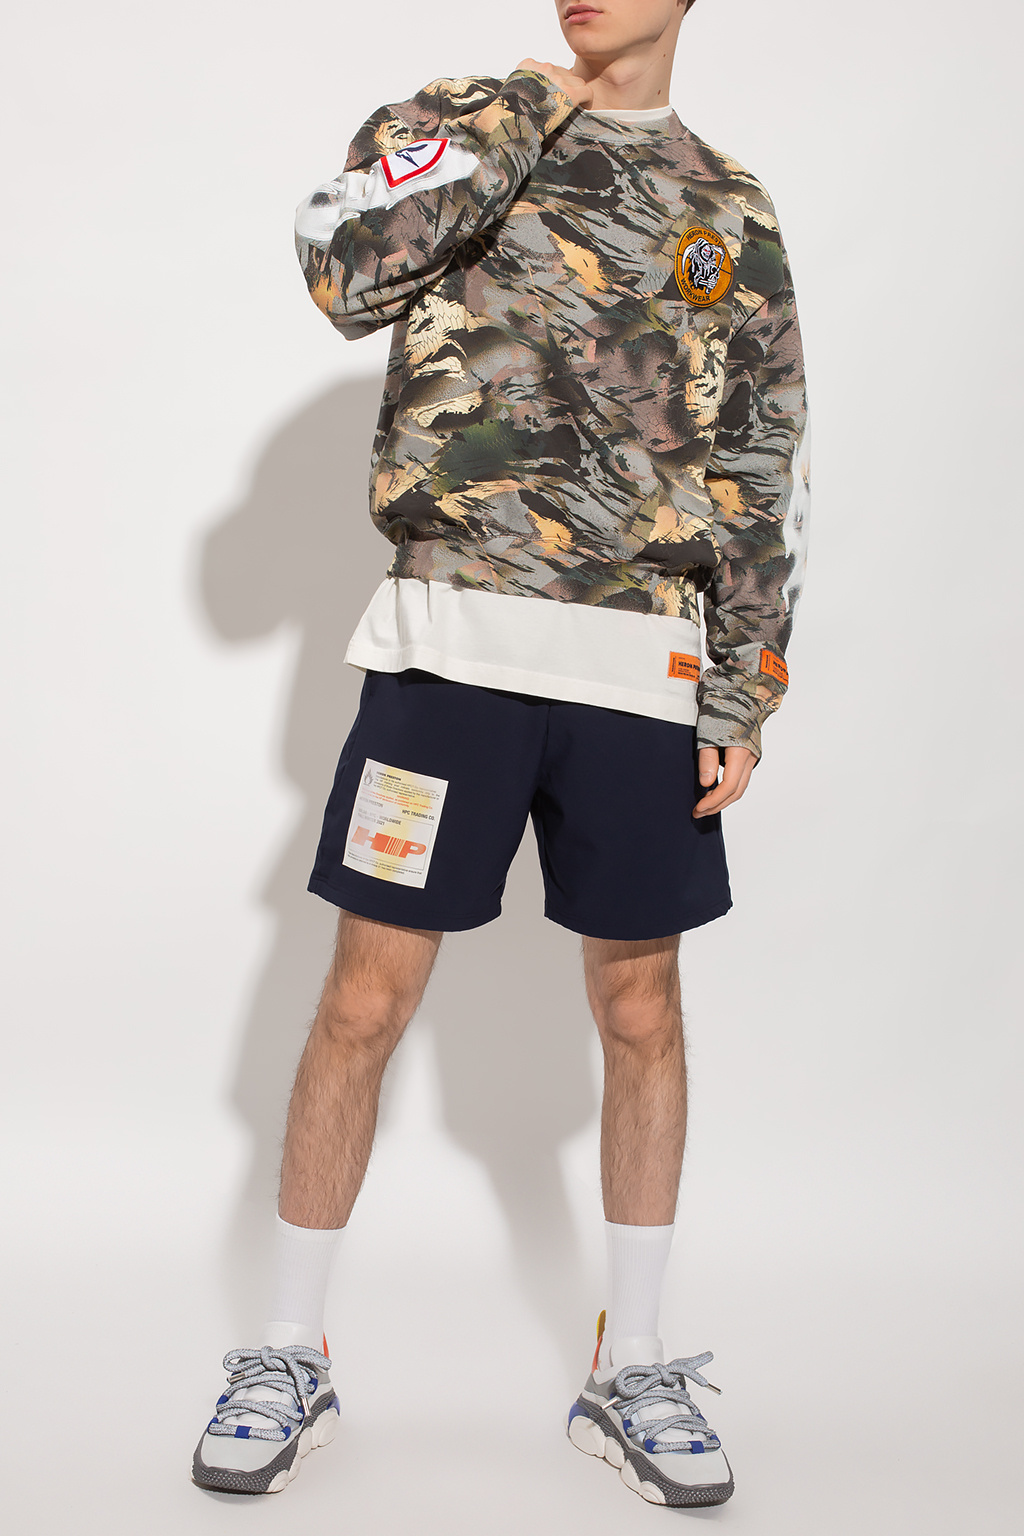 Heron Preston Patterned sweatshirt | Men's Clothing | Vitkac